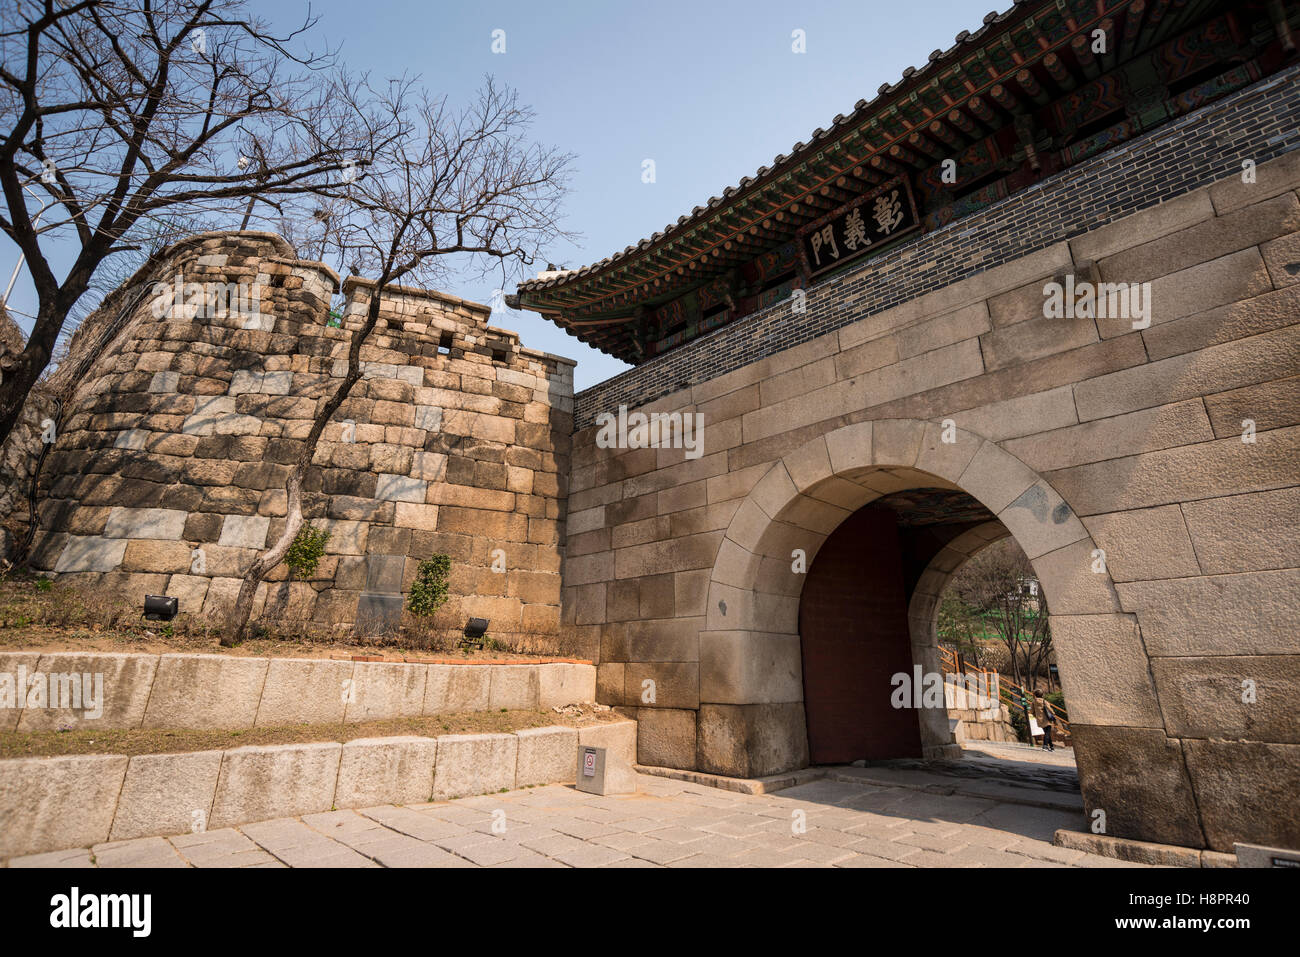 Changui Changuimun (ou porte), l'un des principaux points d'entrée de la ville de Séoul (mur) Hanyangdoseong Buamdong, sentier, Séoul, Corée Banque D'Images